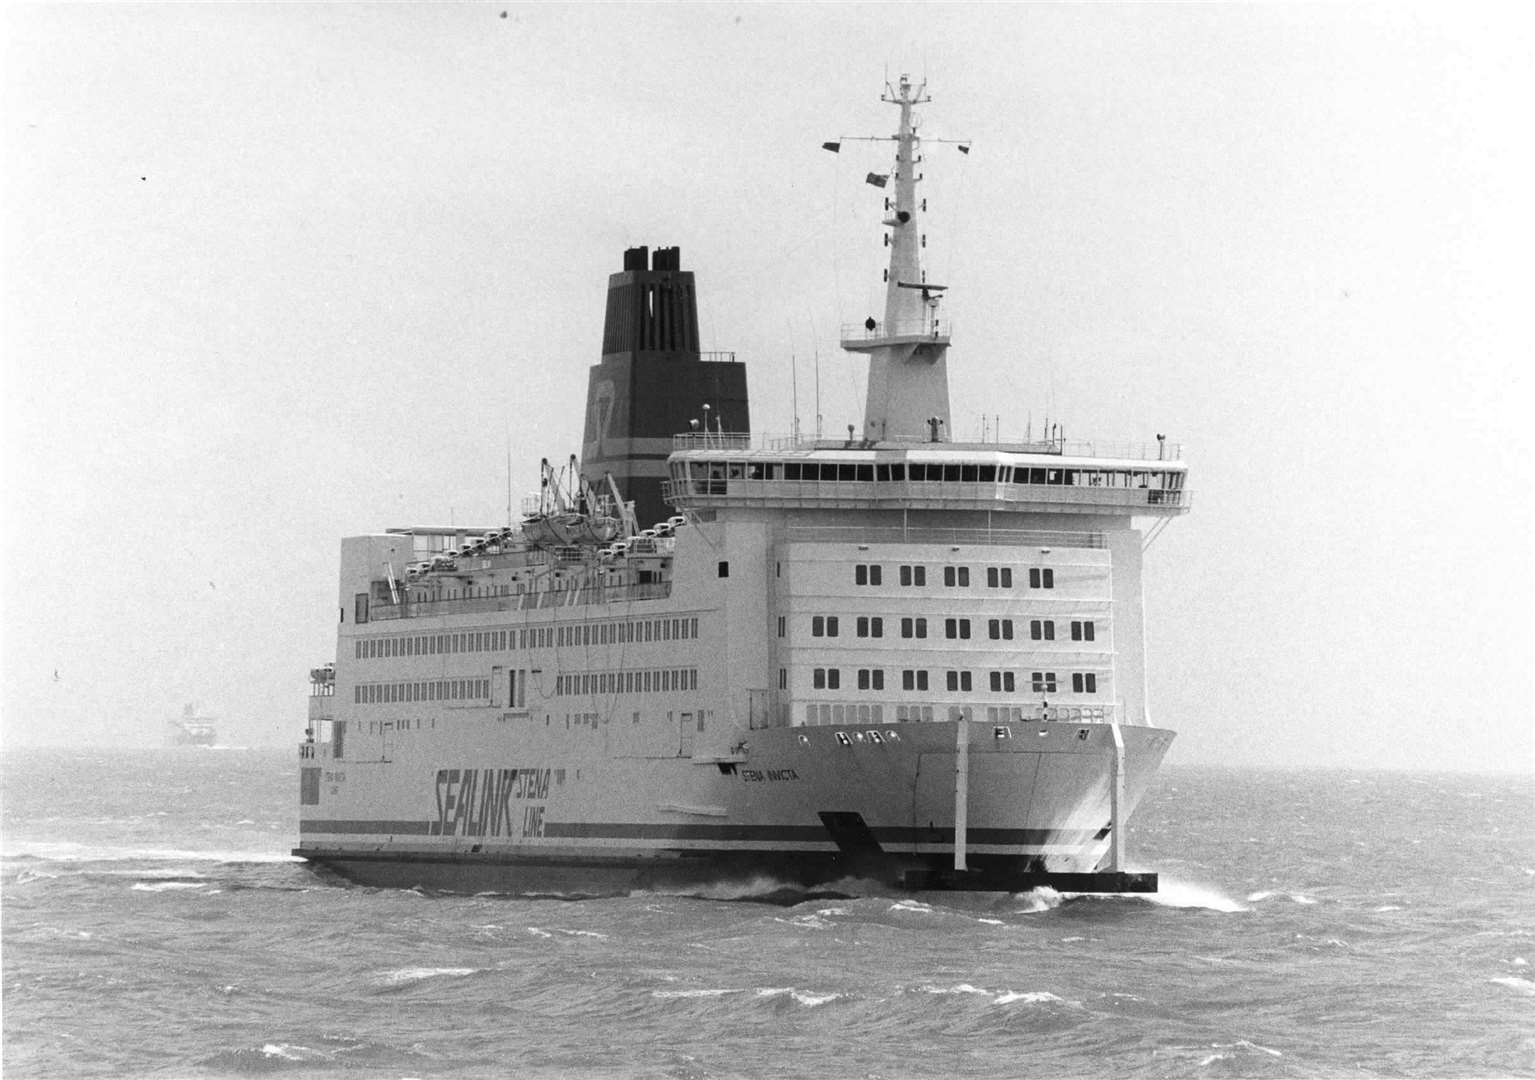 A Sealink ferry